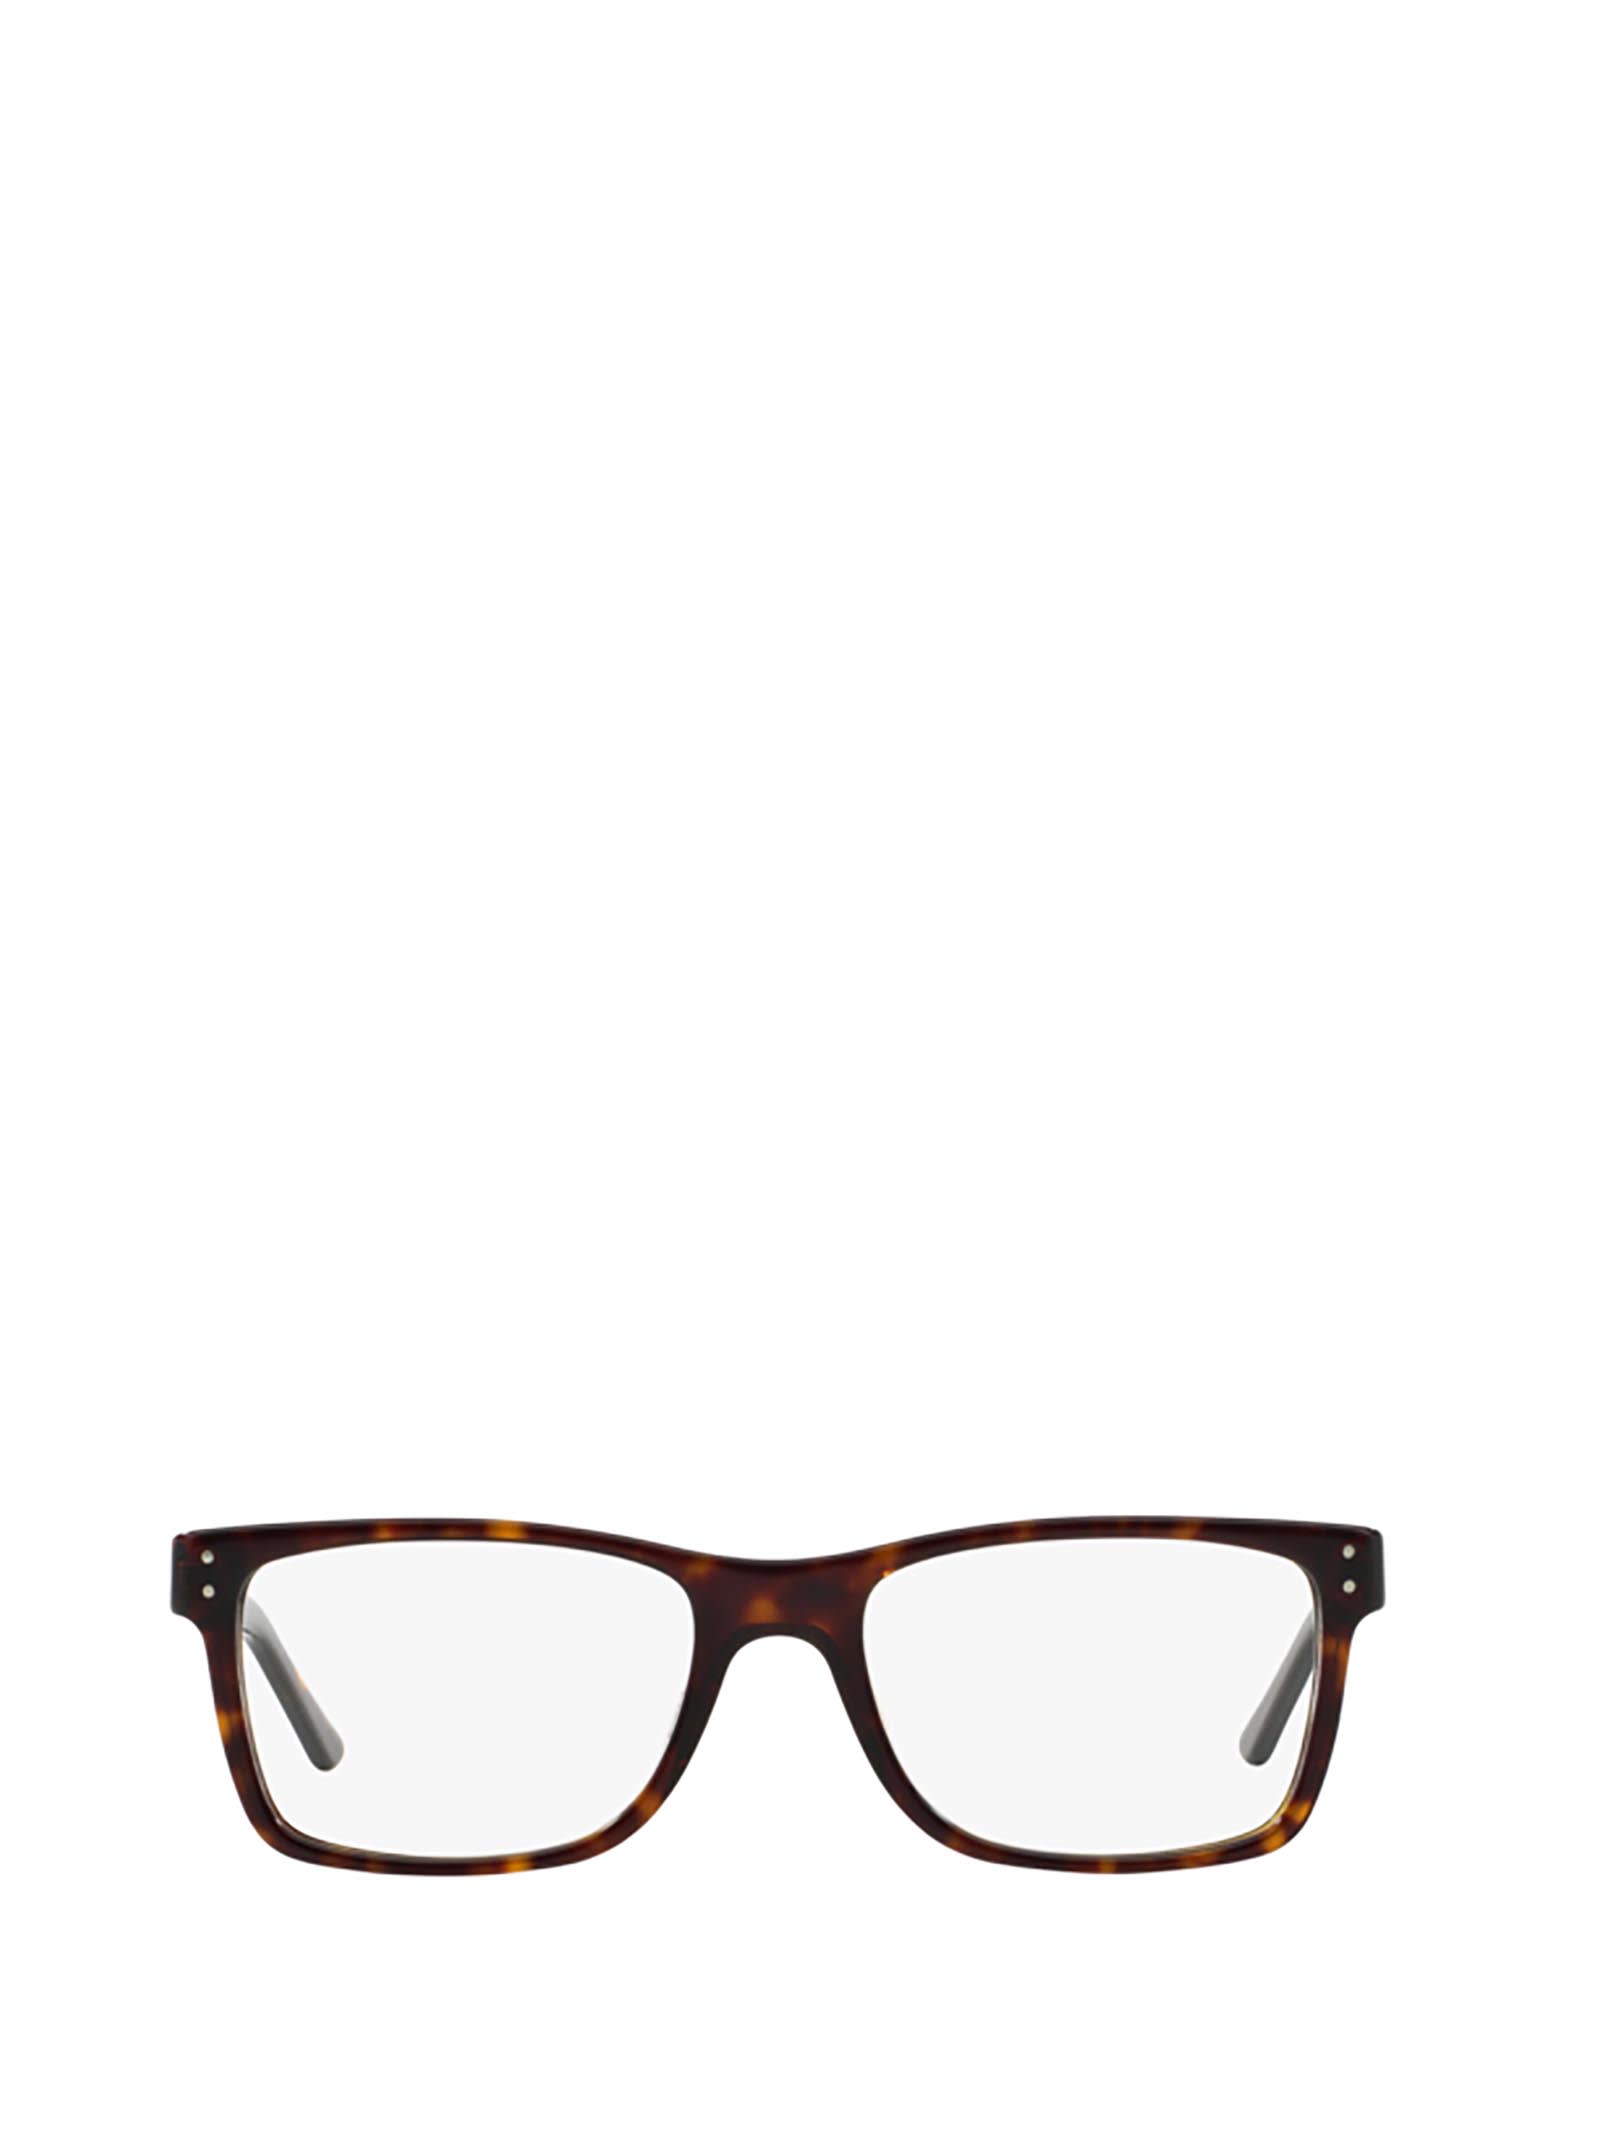 Polo Ralph Lauren Ph2057 5003 Glasses